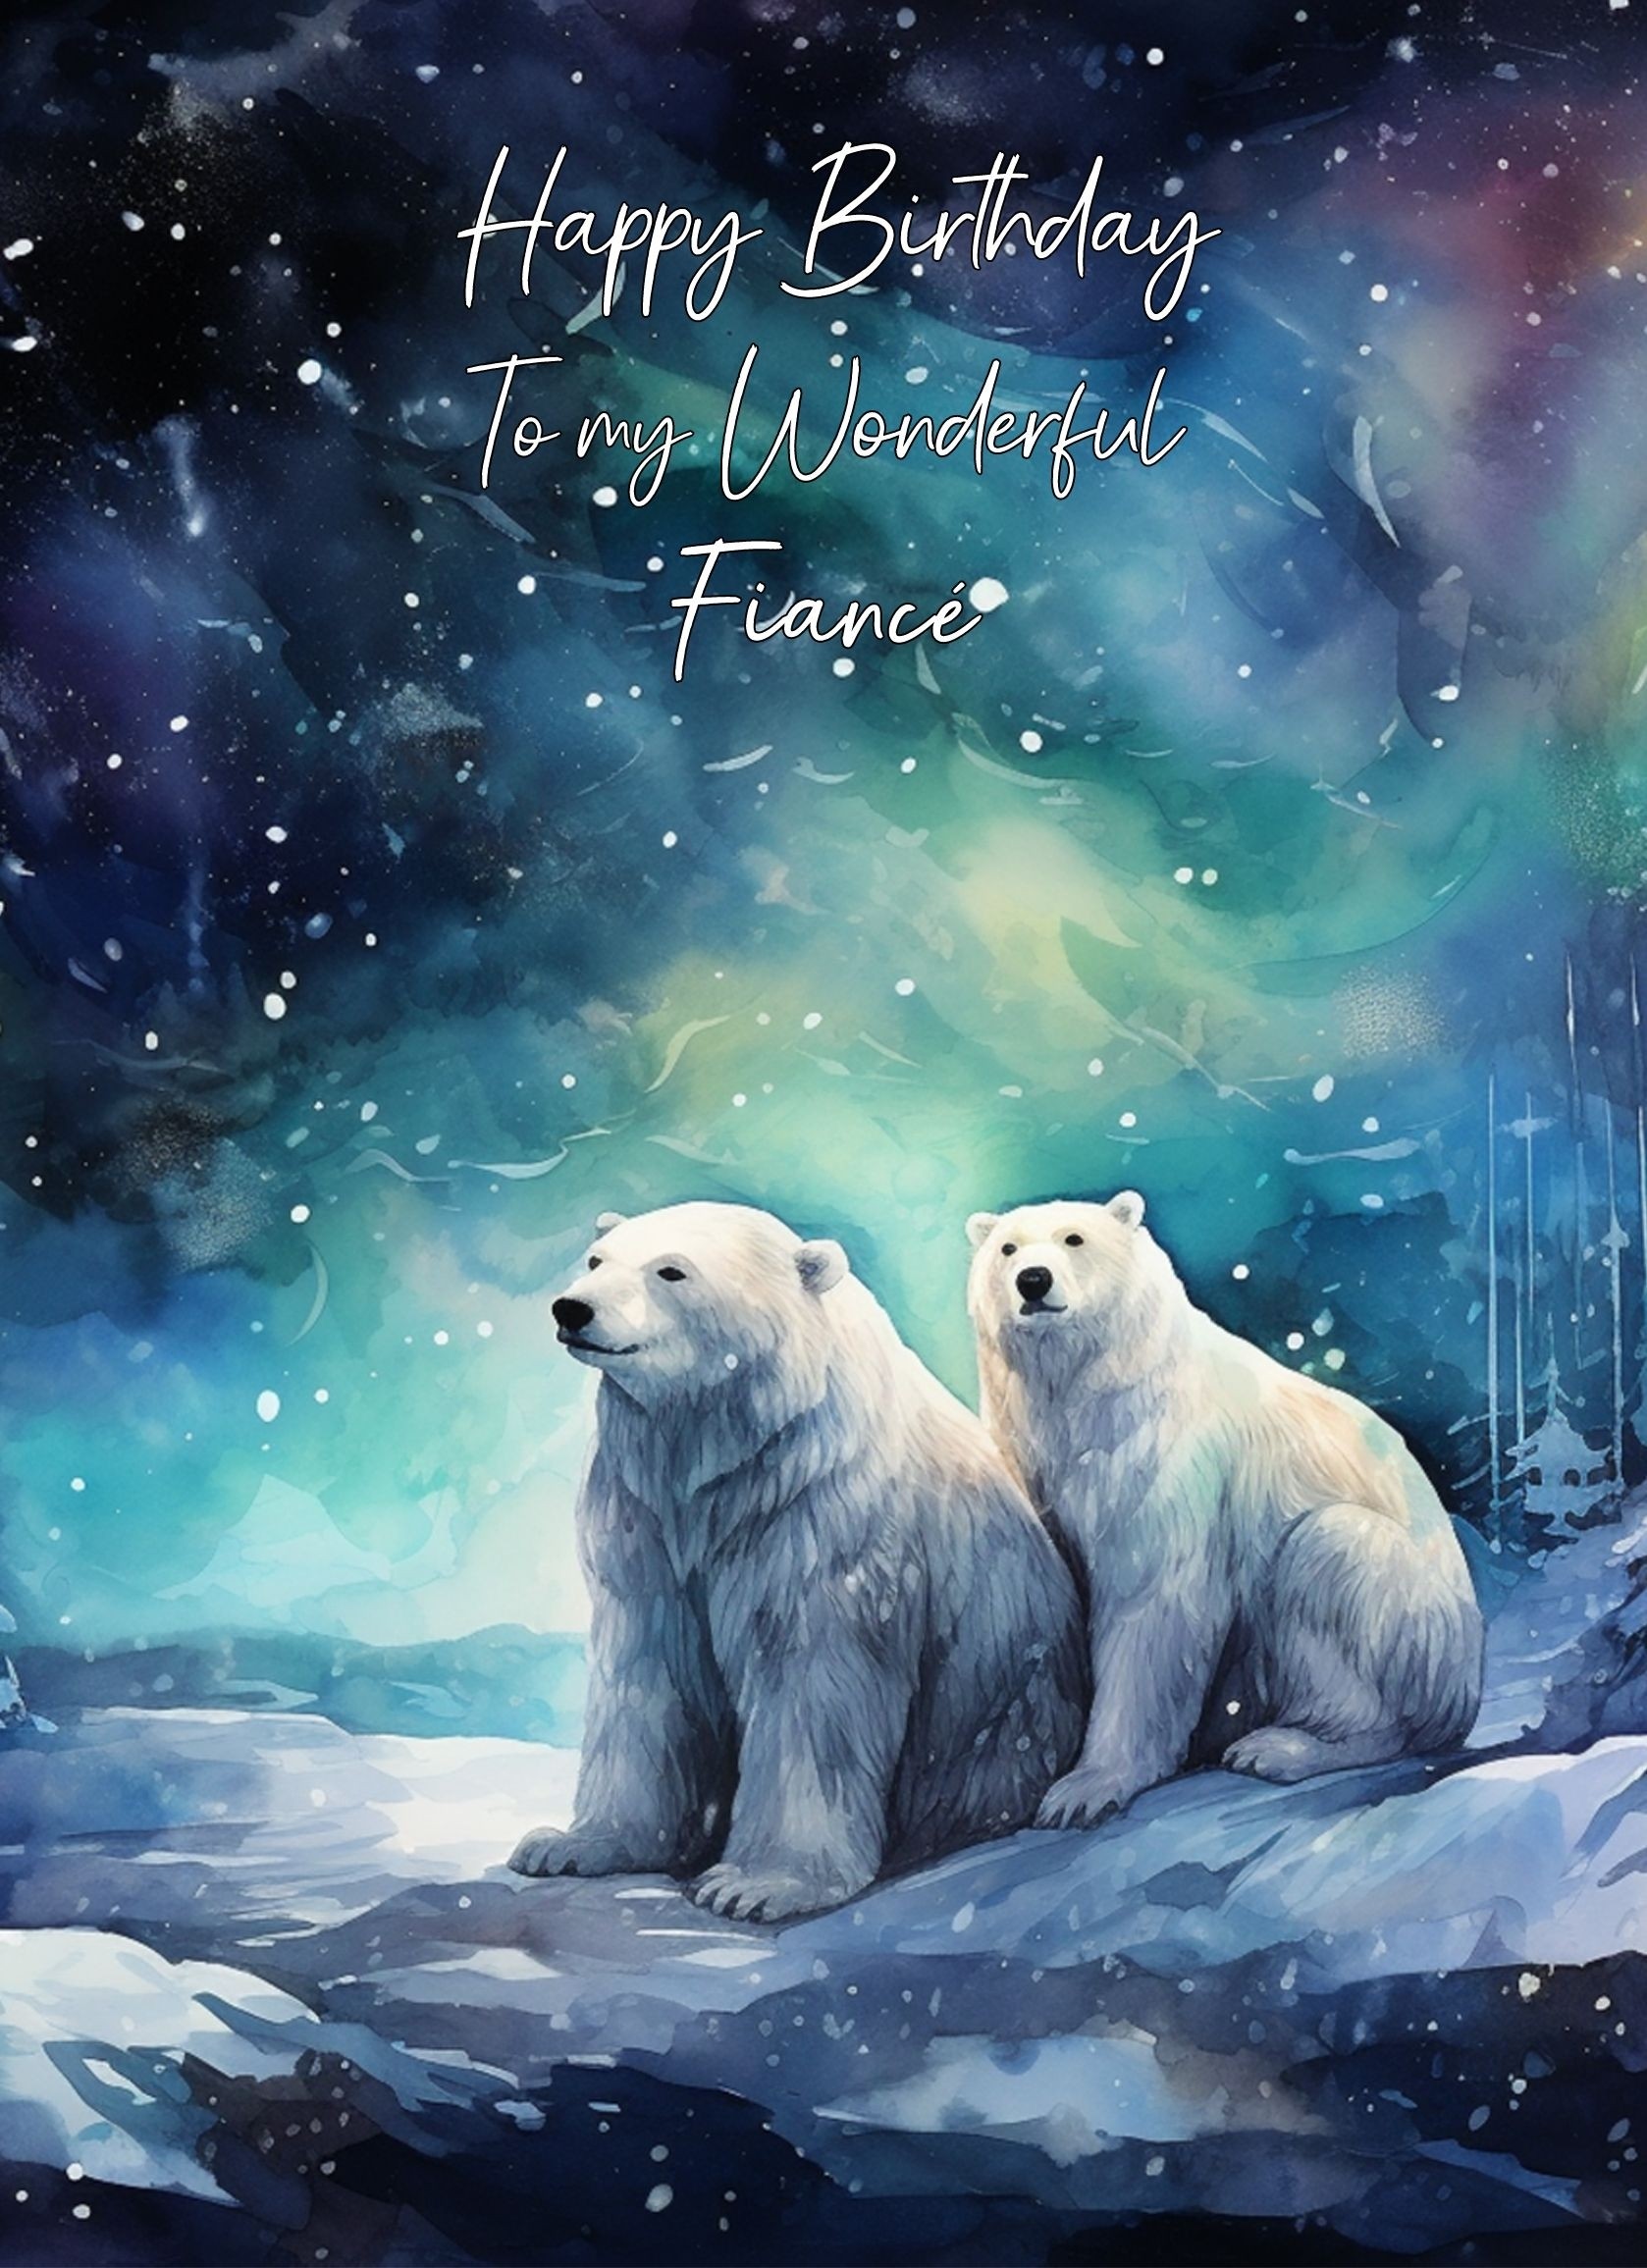 Polar Bear Art Birthday Card For Fiance (Design 5)